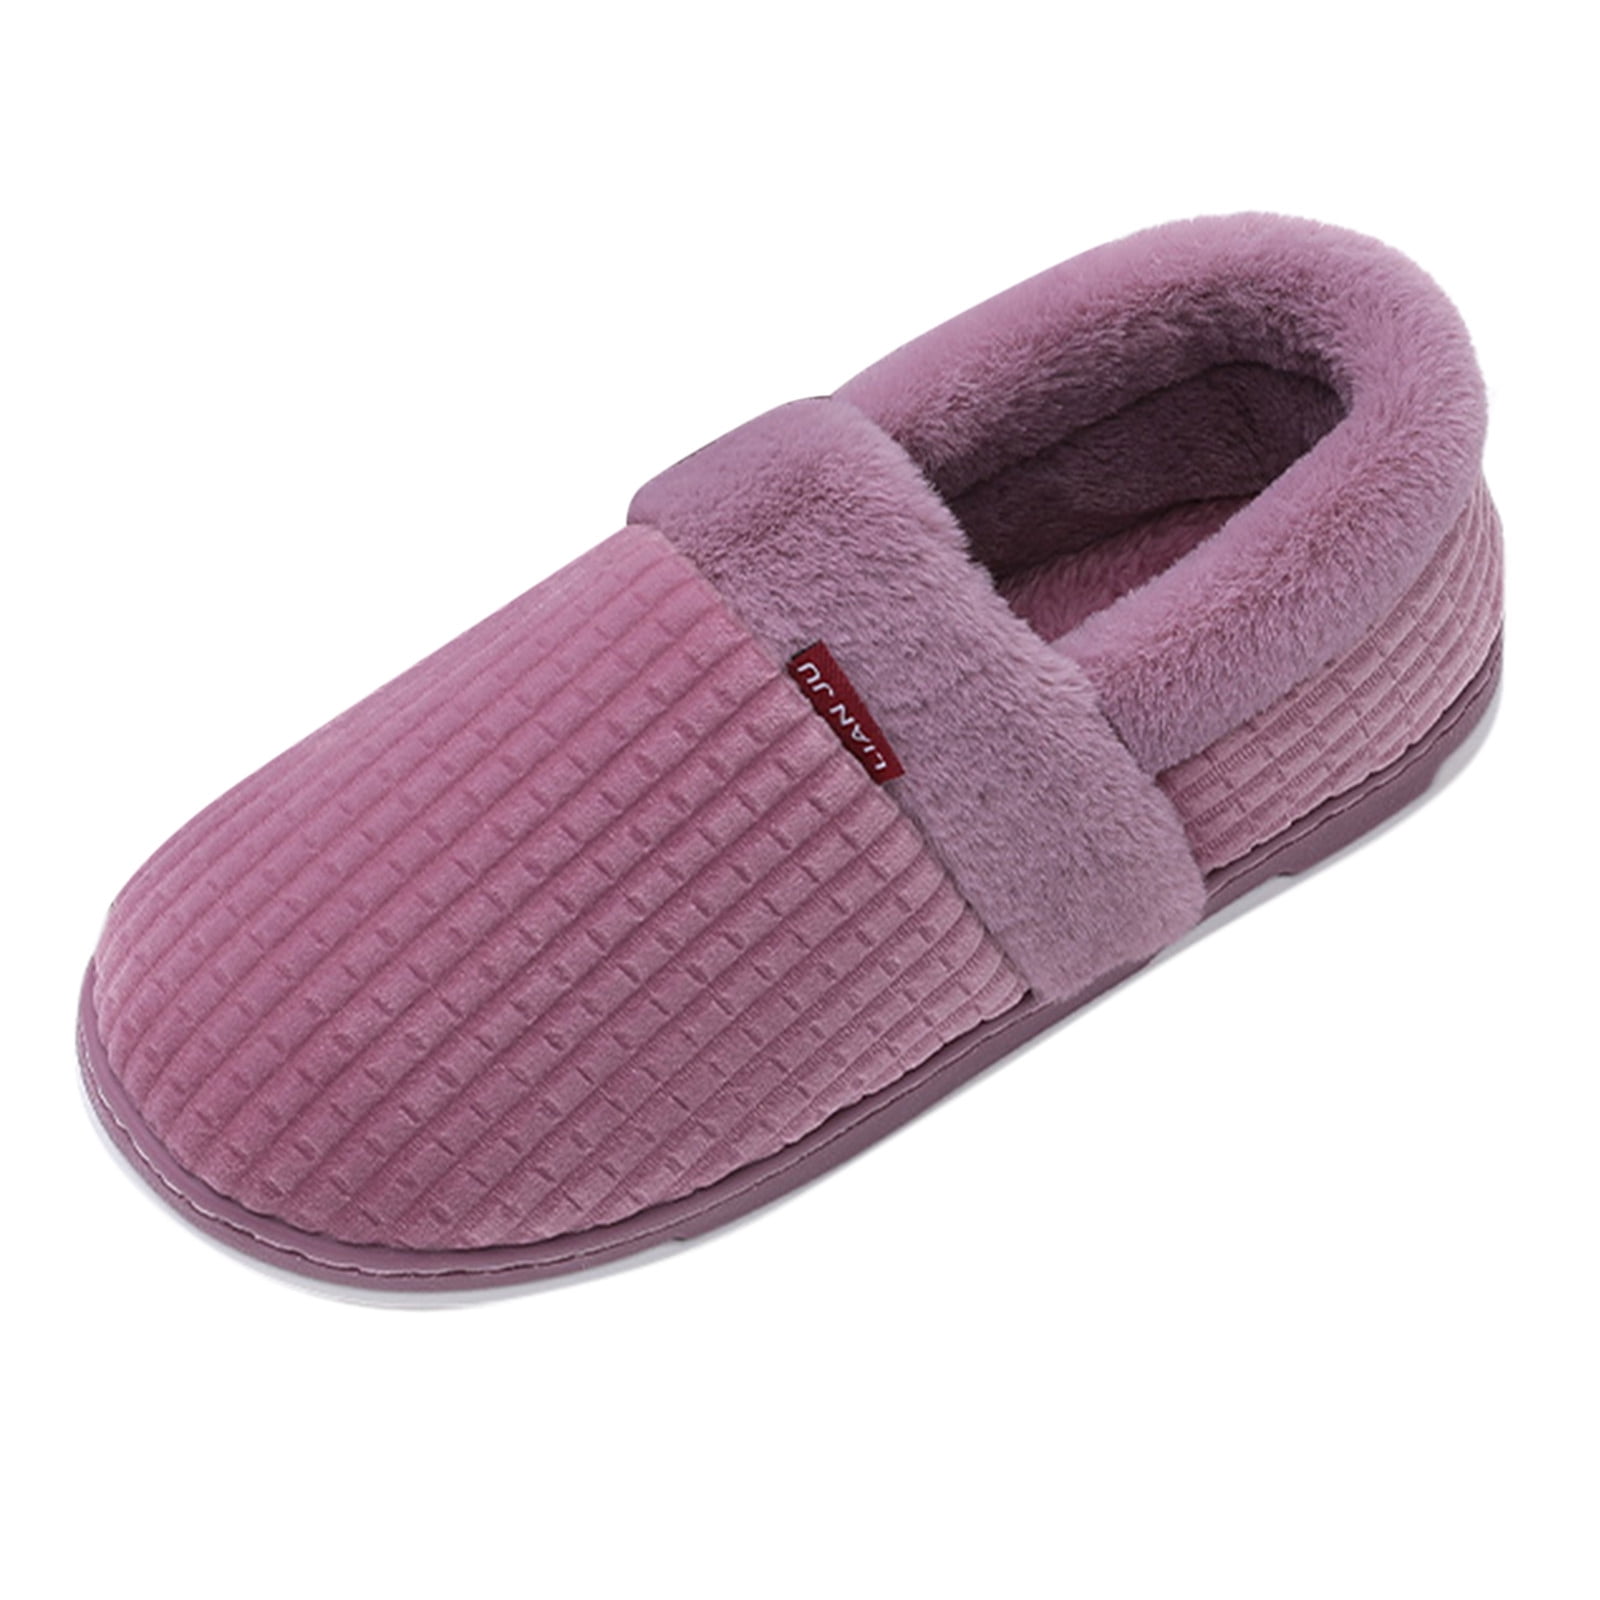 Slippers for Women Memory Foam Fluffy Warm Non-Slip Comfortable Slip-On ...